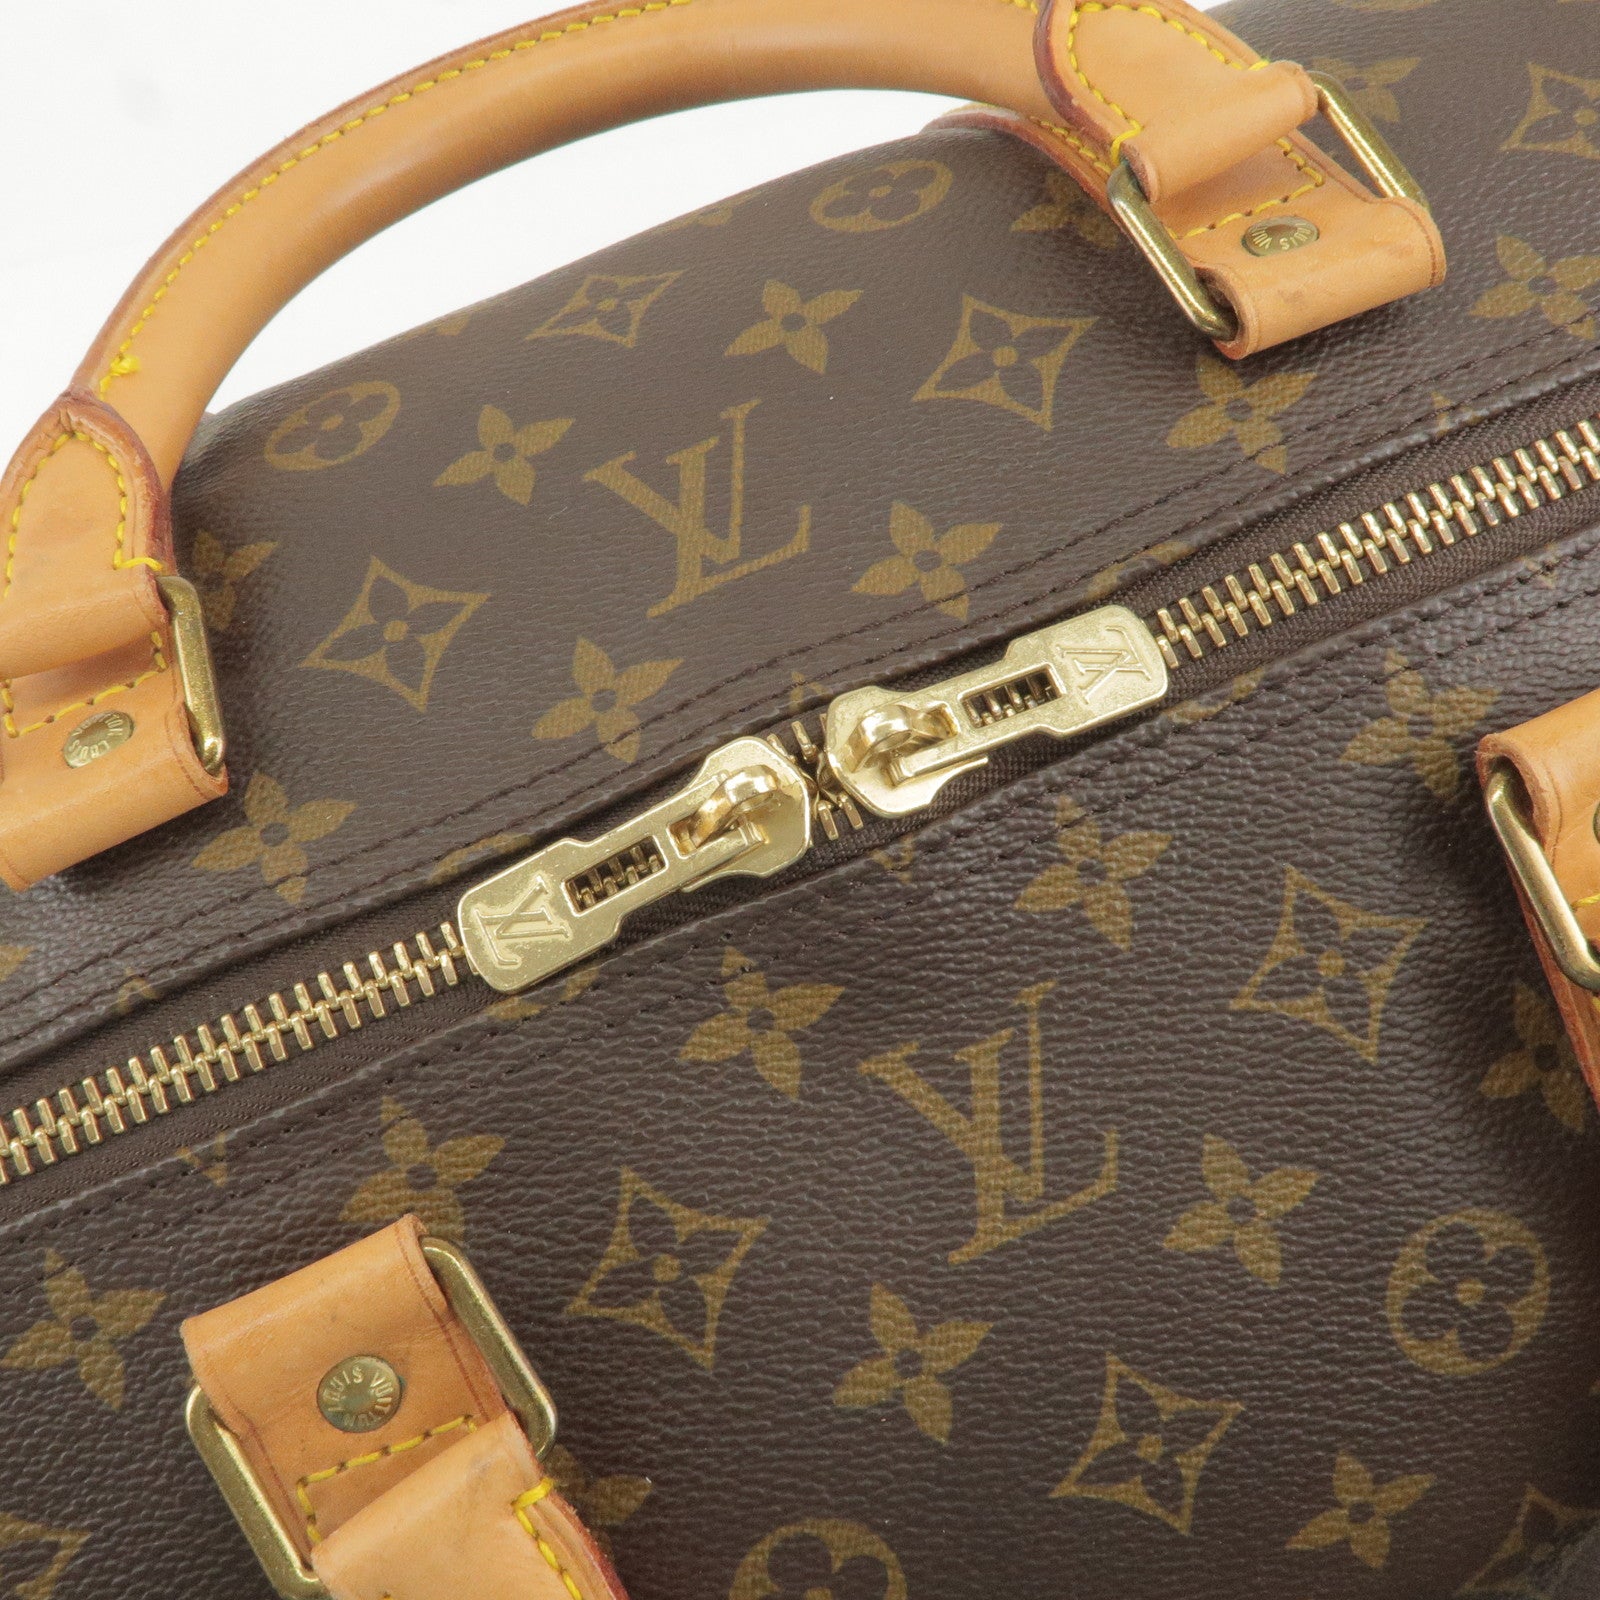 Artcurial 2507 2014-02 Louis Vuitton - Louis - Monogram - Keep - 60 -  M41412 – dct - Bandouliere - ep_vintage luxury Store - Bag - Vuitton - All